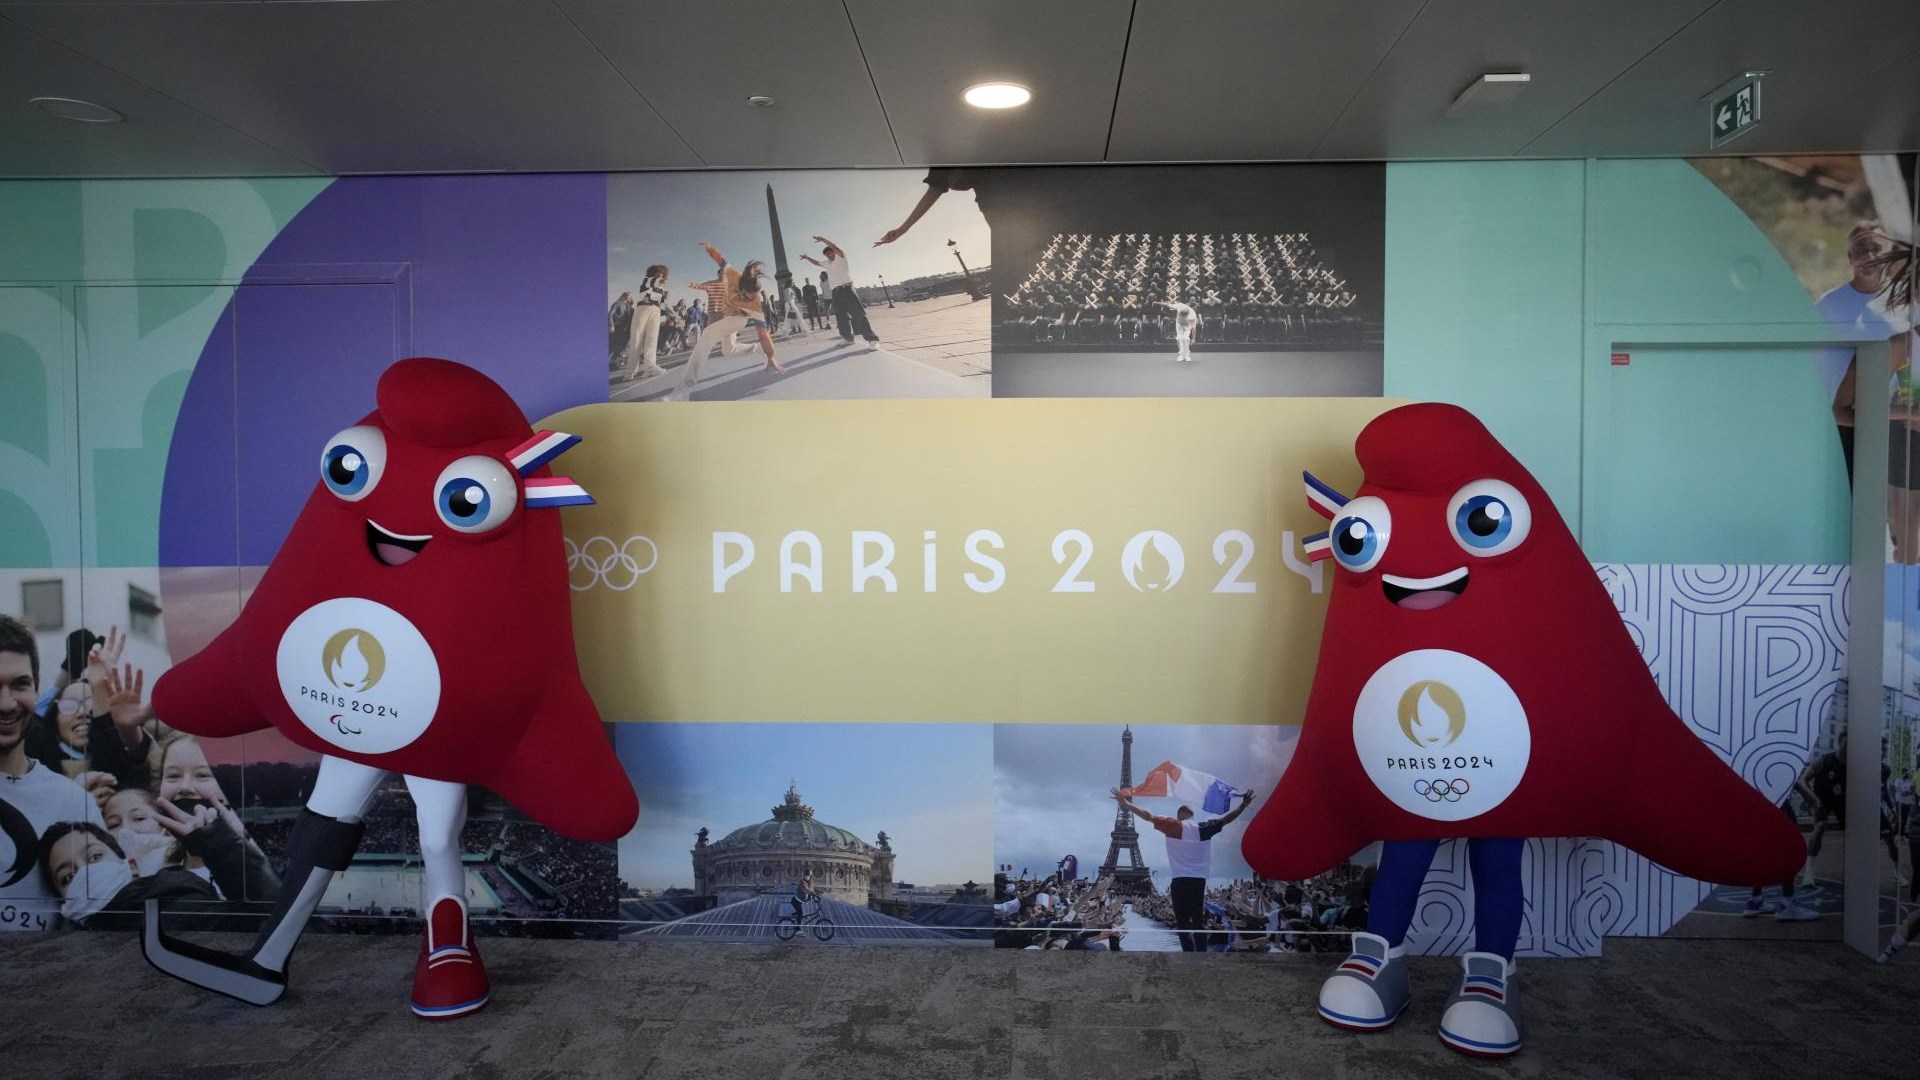 Droni velika grožnja za varnost na olimpijskih igrah v Parizu